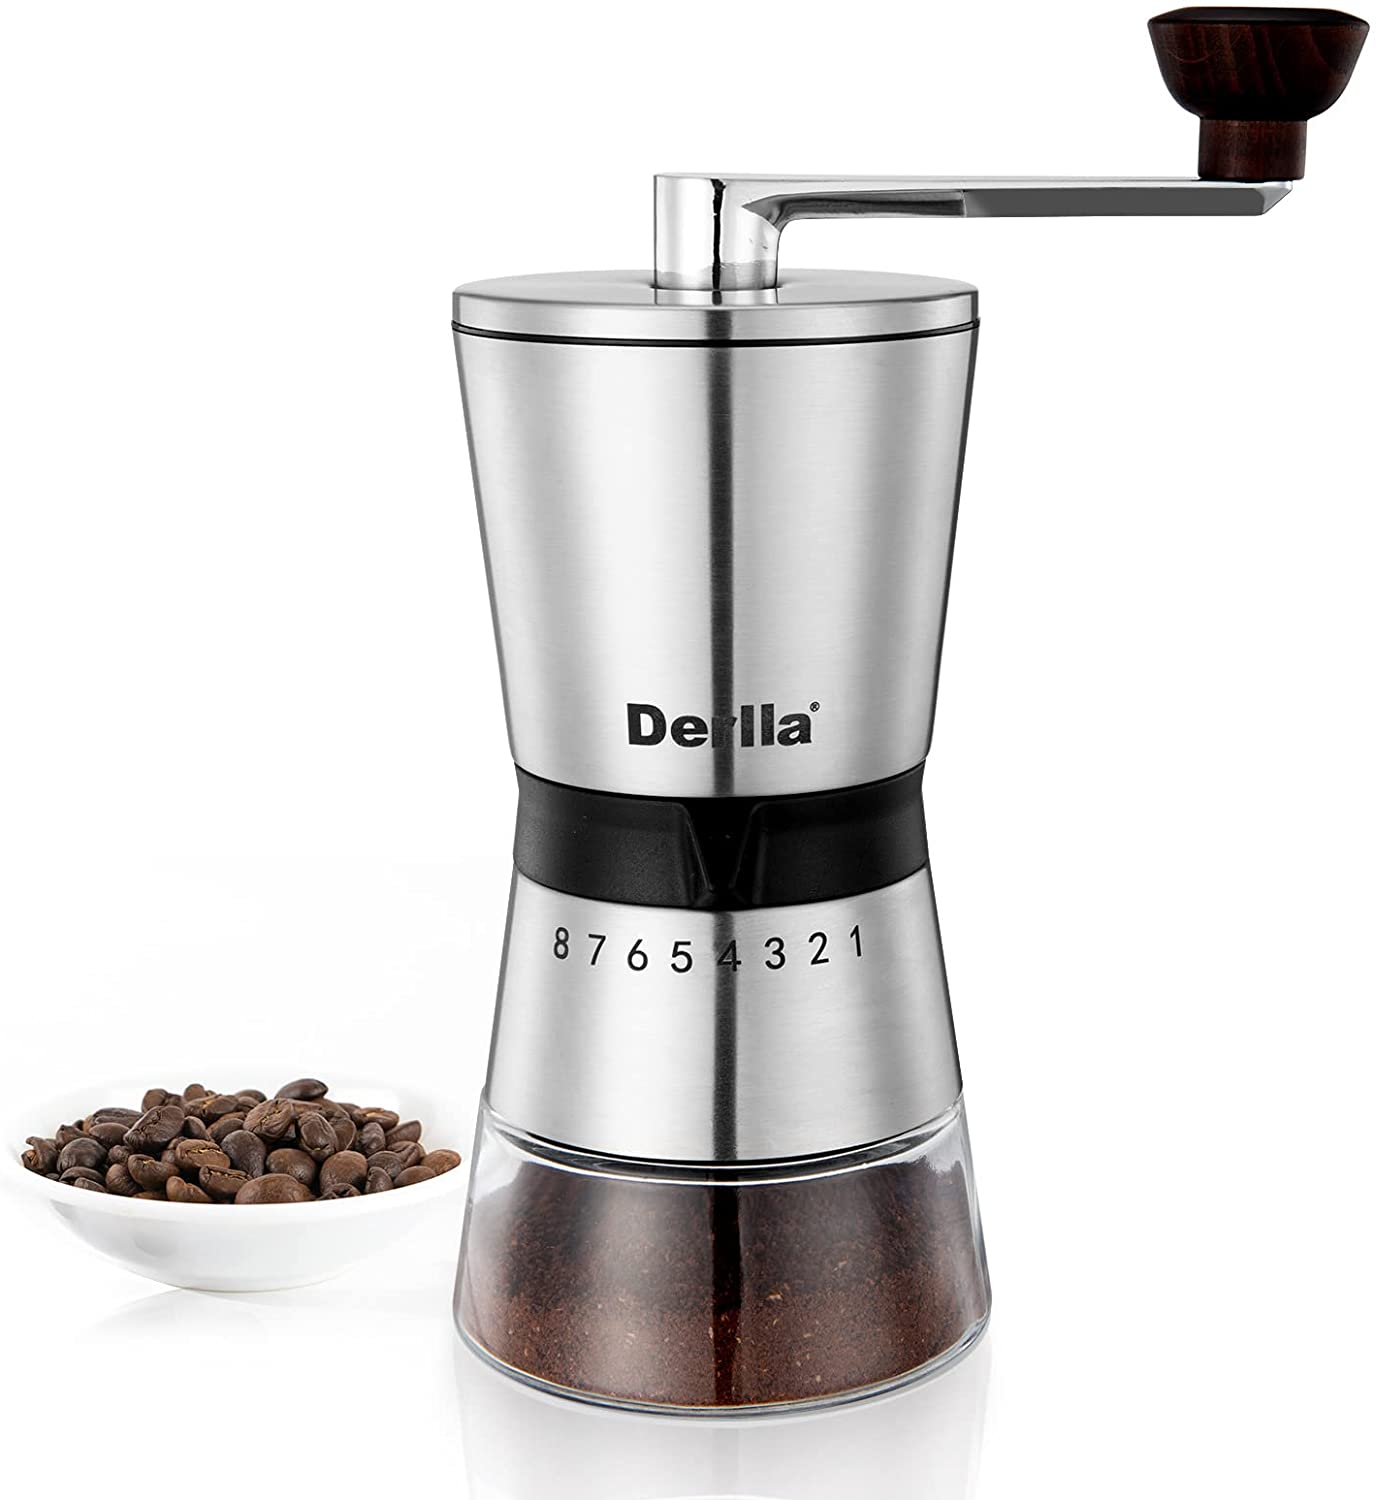 Derlla Coffee Grinder, Stainless Steel Coffee Grinder, Manual Coffee Grind